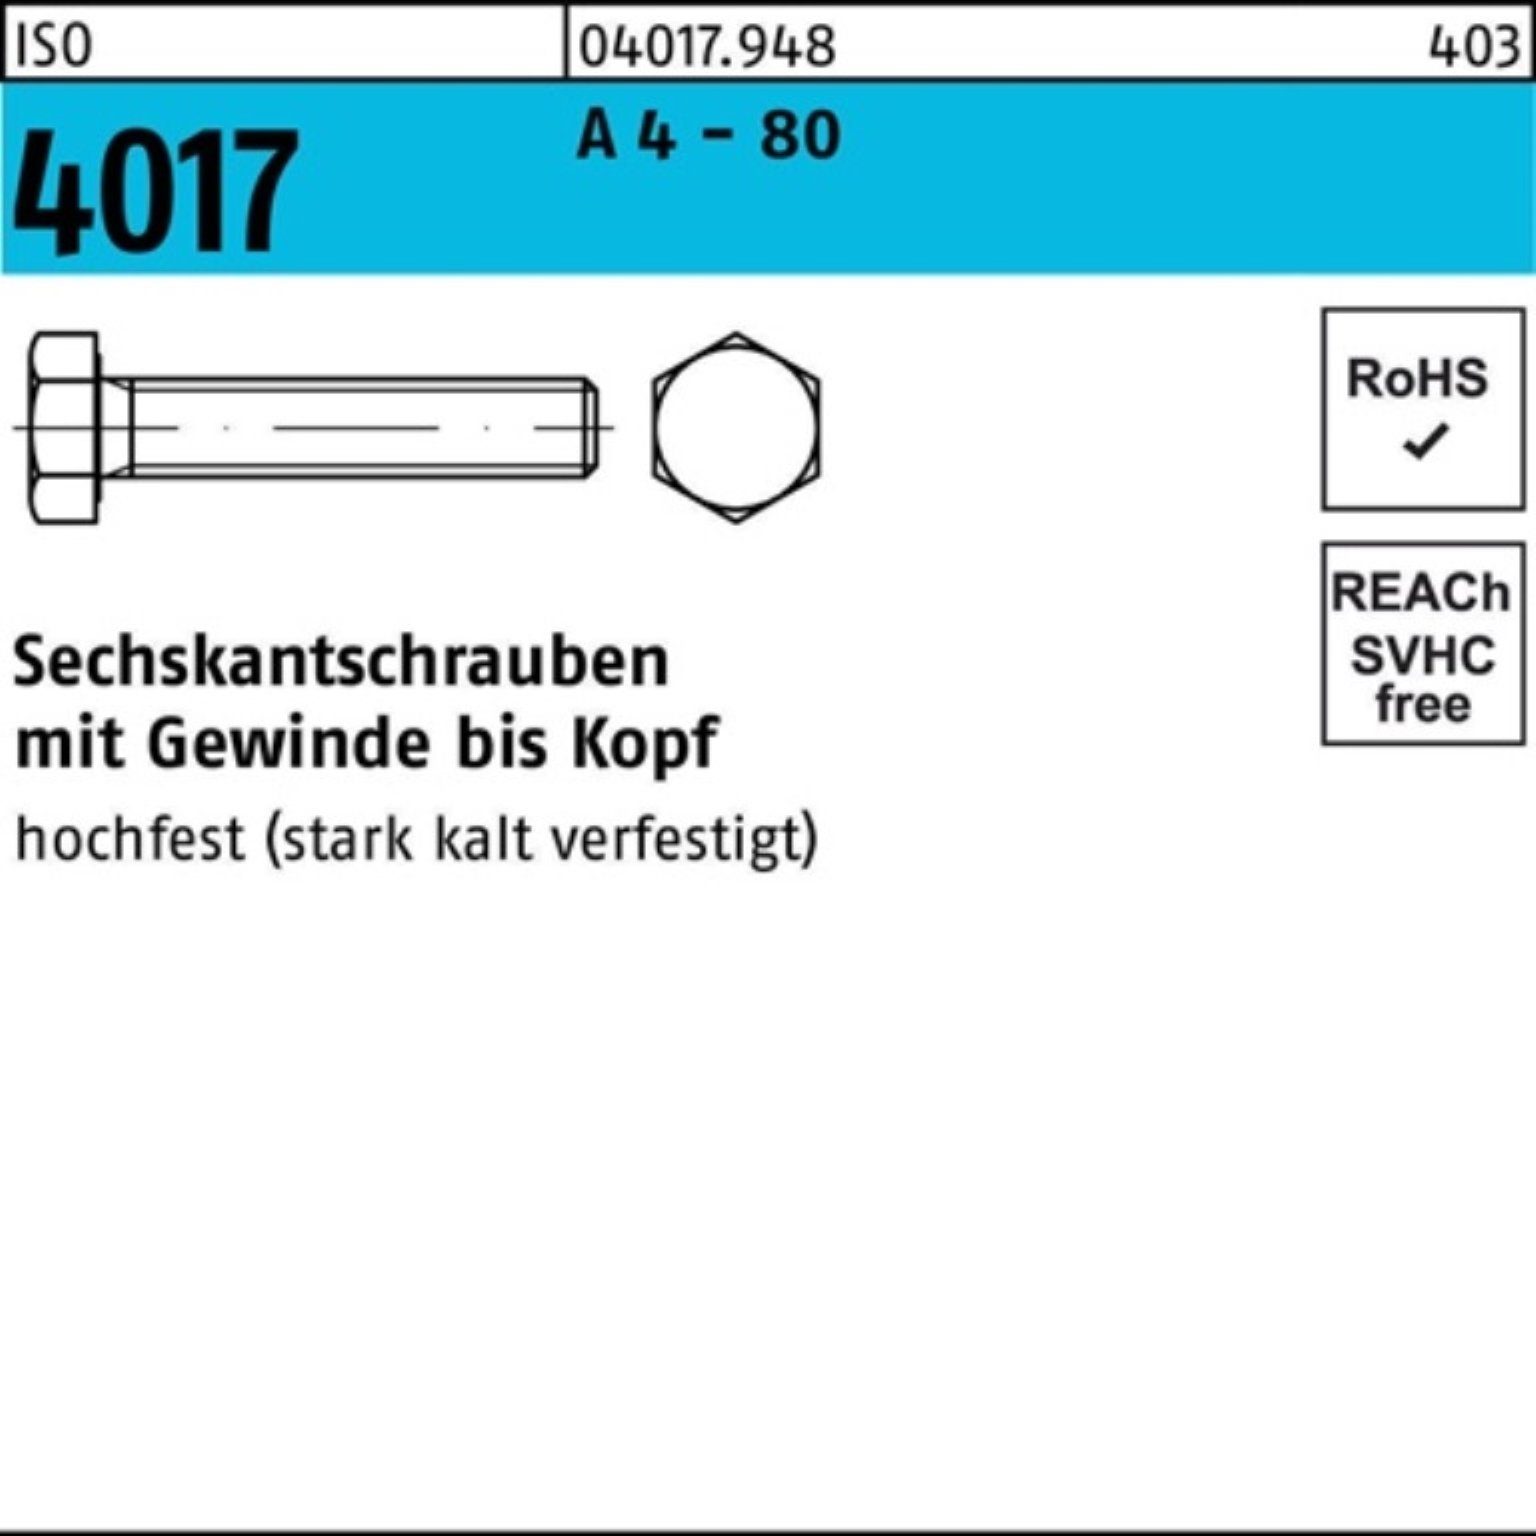 Bufab Sechskantschraube 100er Pack Sechskantschraube ISO 4017 VG M10x 40 A 4 - 80 100 Stück I